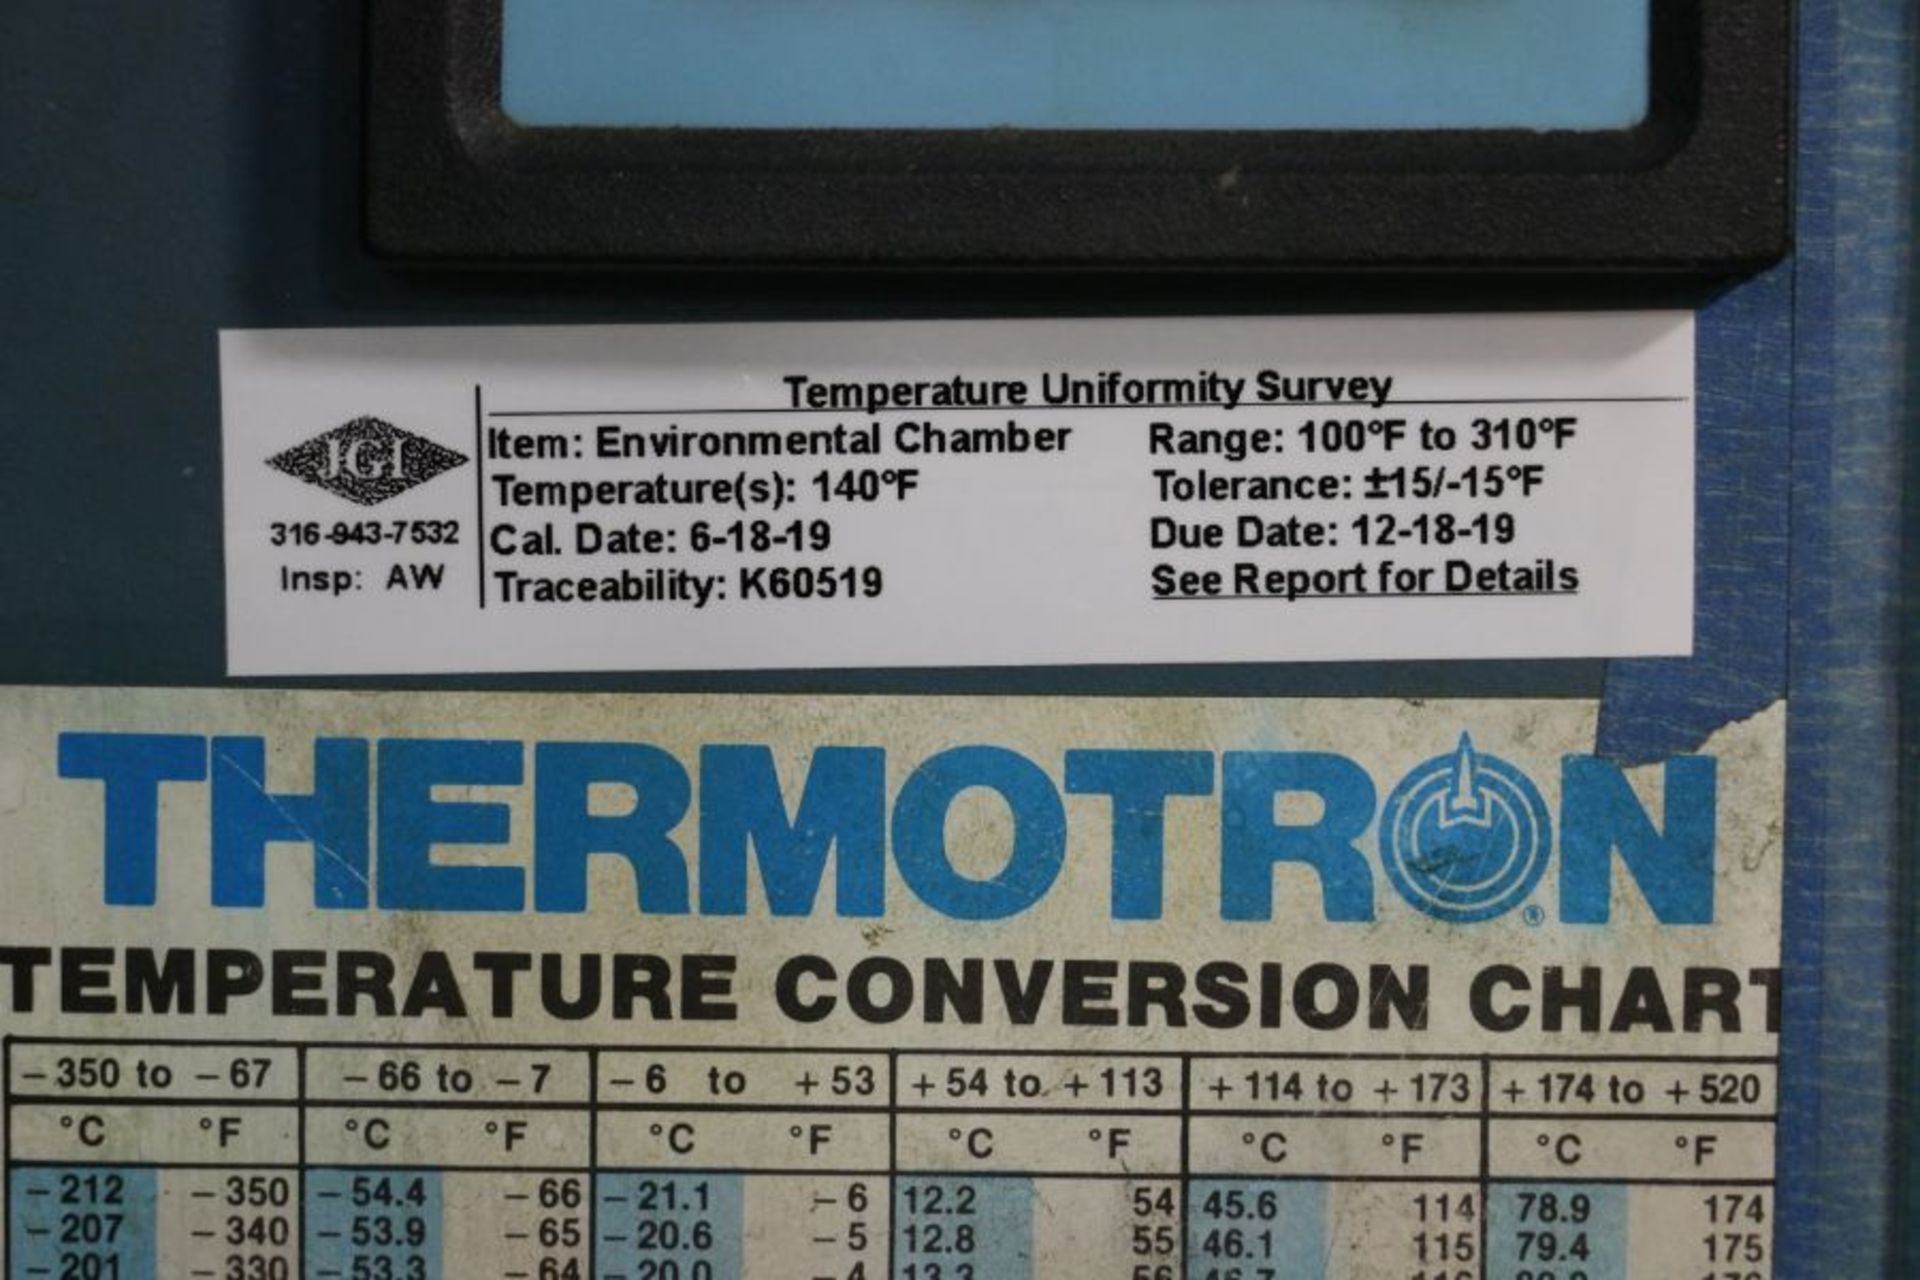 Thermotron S-32 Oven, 36" x 36" x 36" Work Envelope, 100 - 310 Degrees F Range, 240V, New 1987 - Image 6 of 6